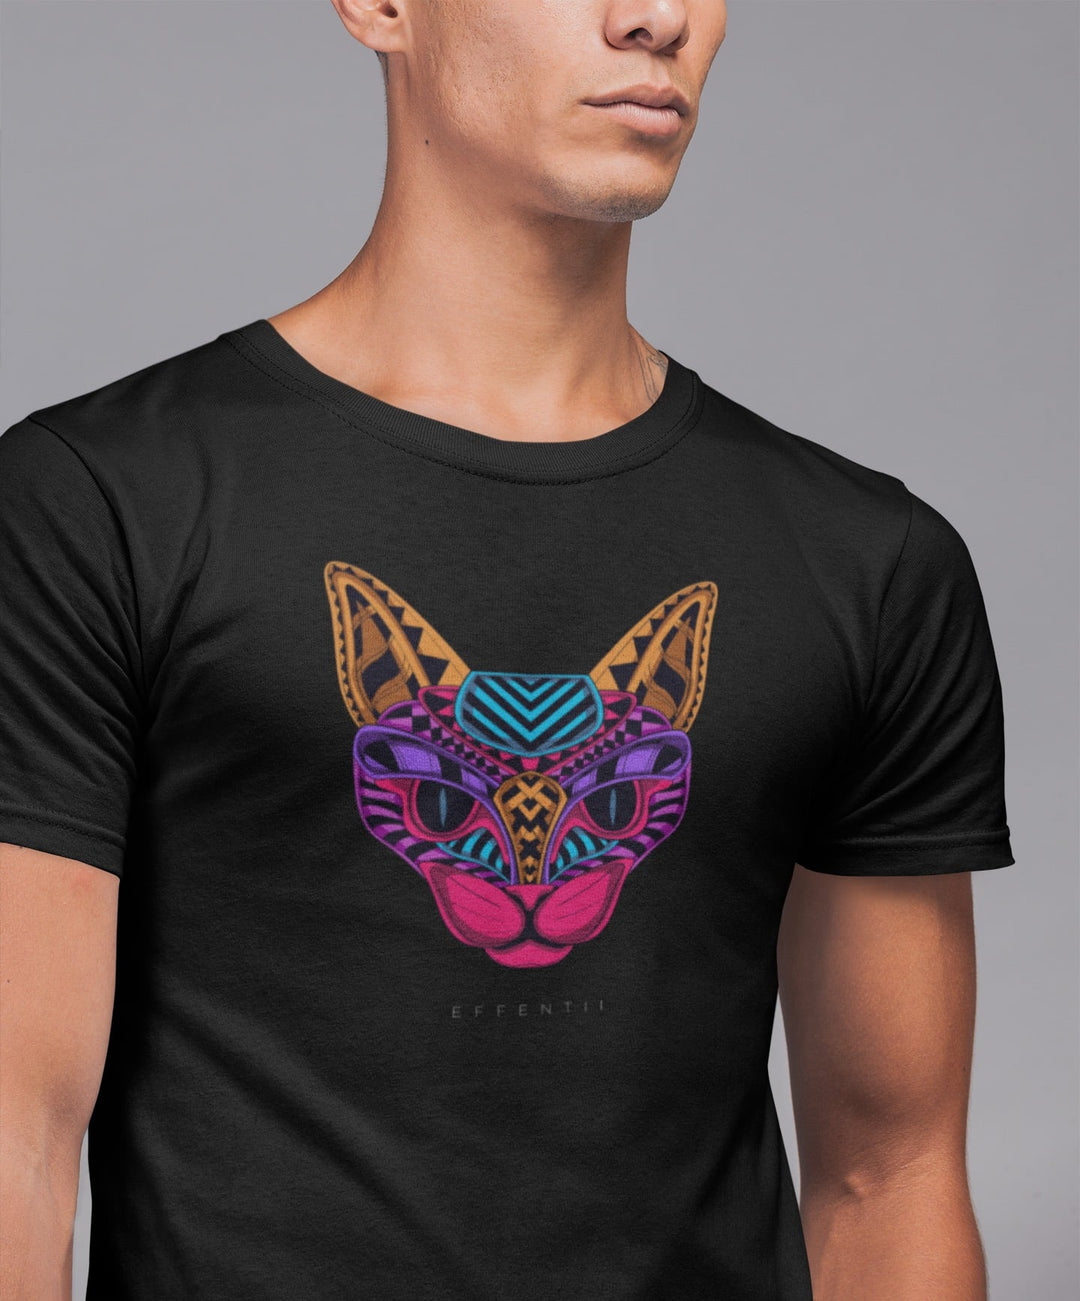 EFFENTII Zendi Cat Men's T-Shirt